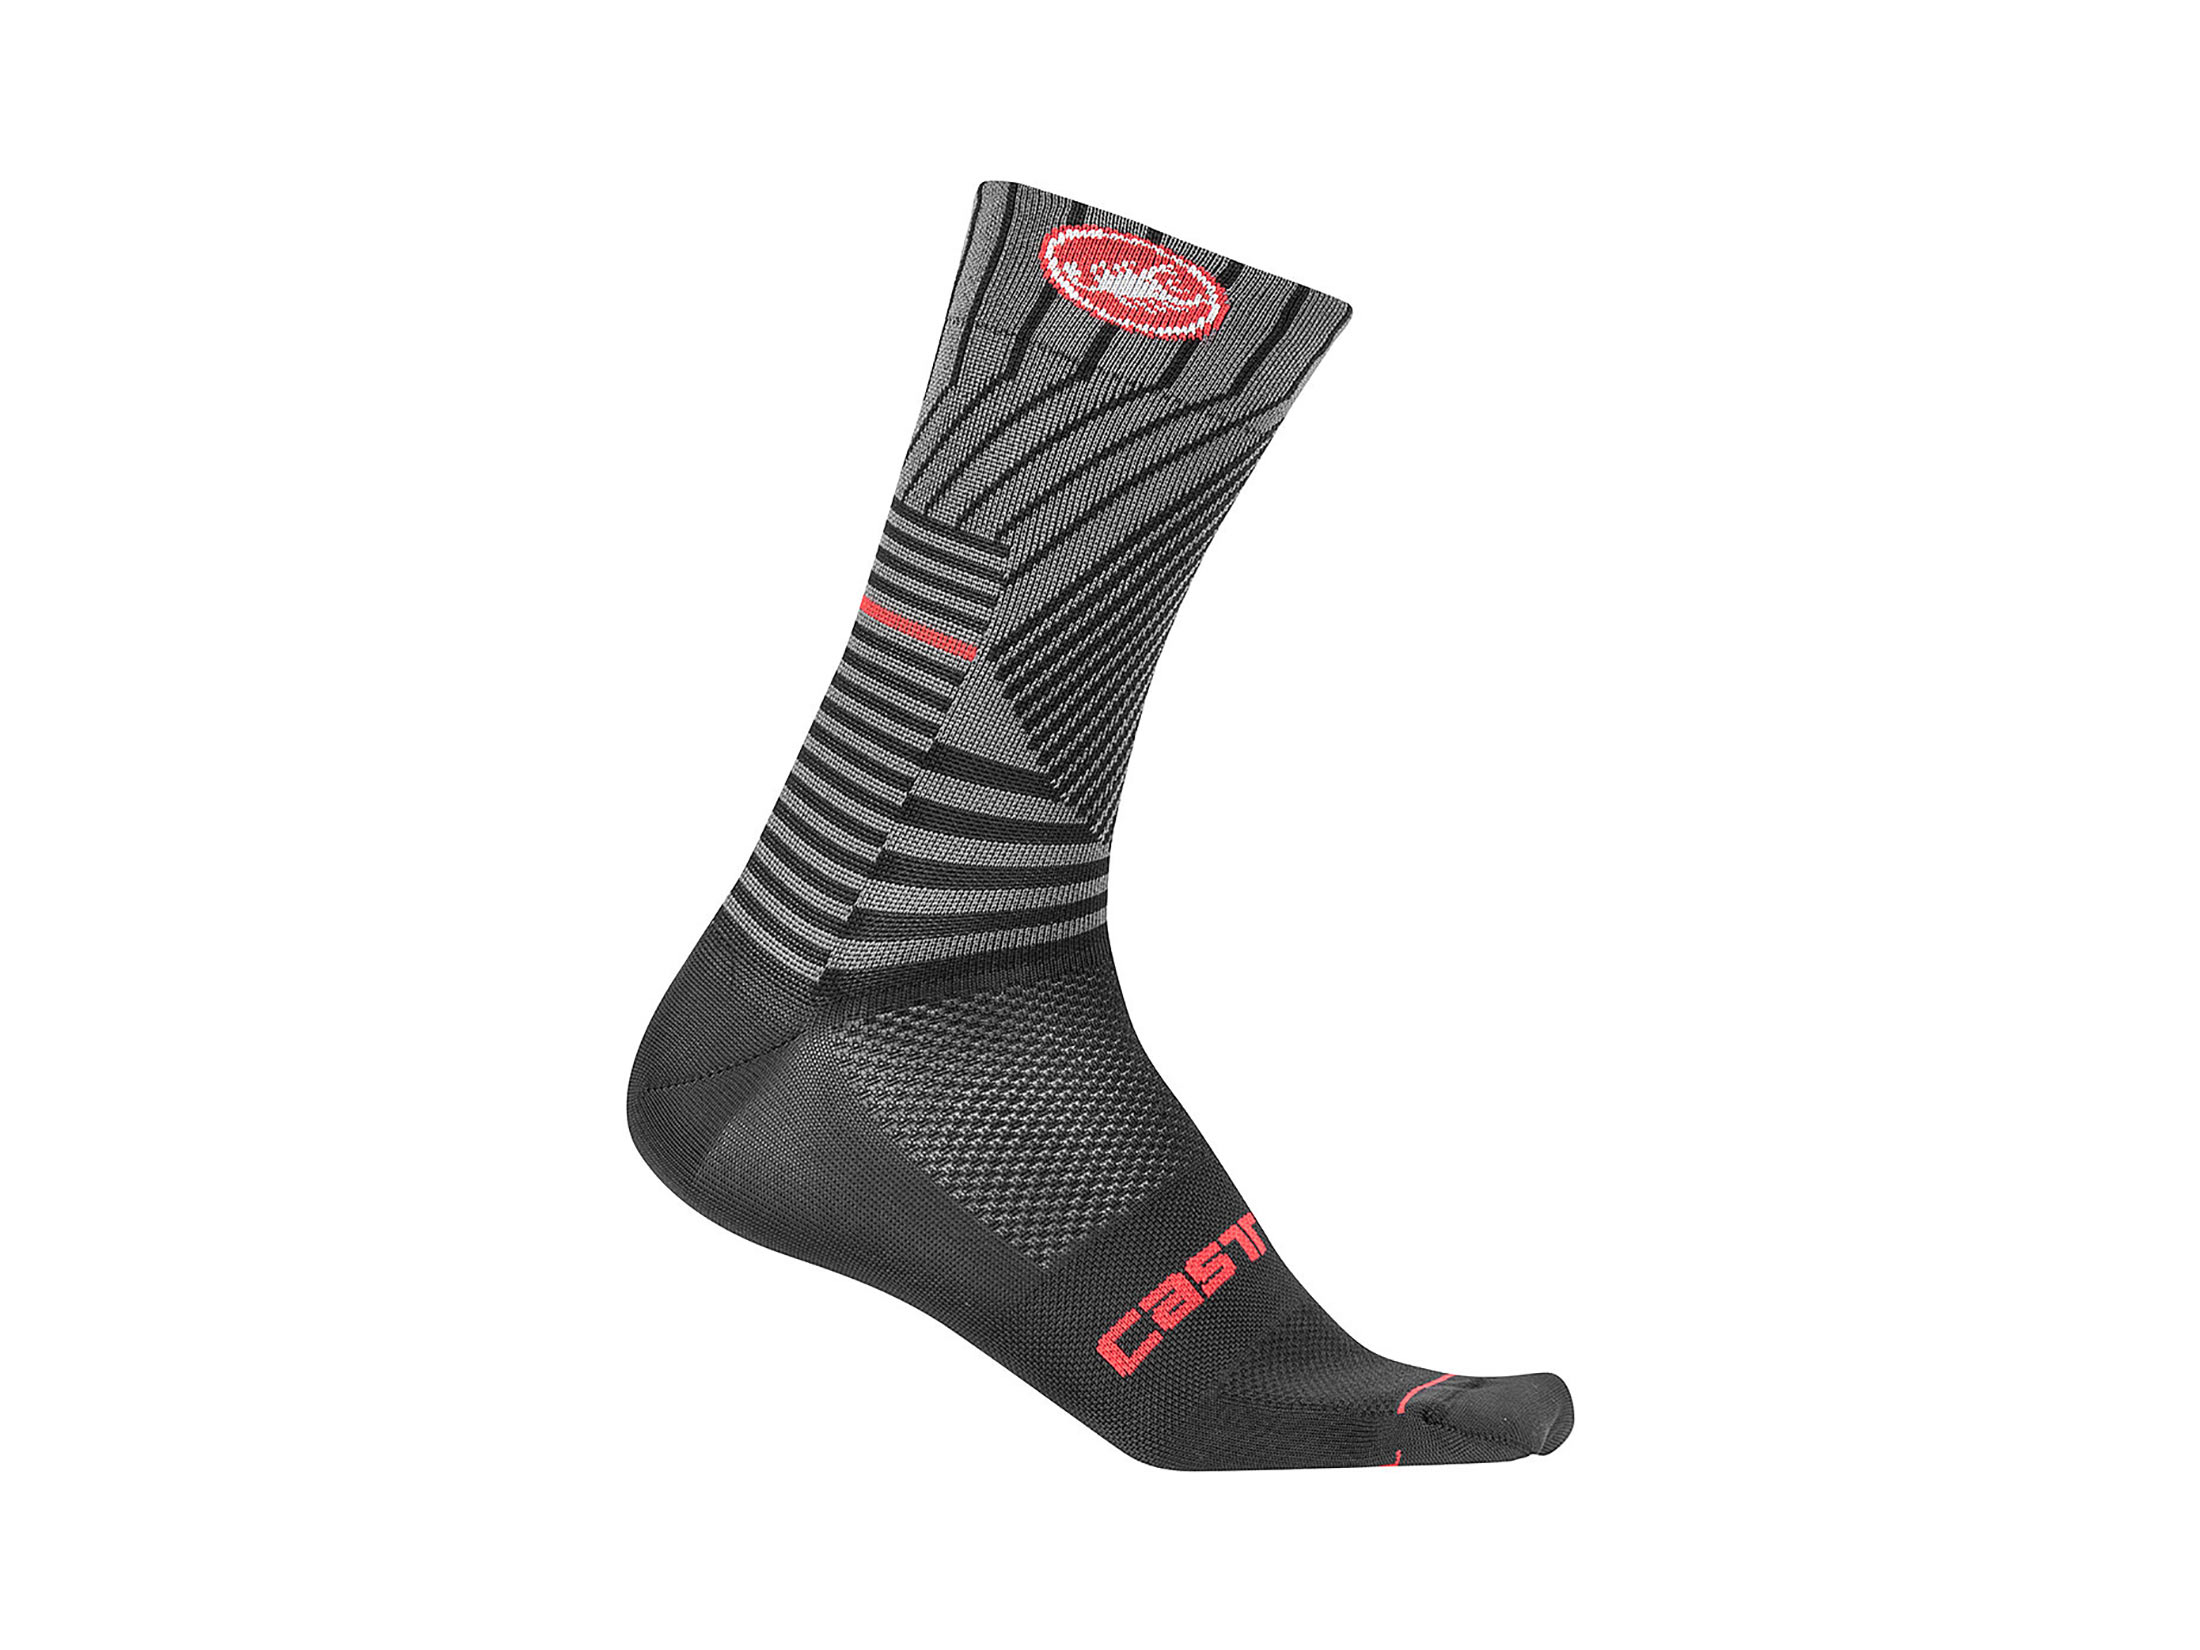 Κάλτσες Castelli Pro Mesh 15 - Μαύρες/Κόκκινες